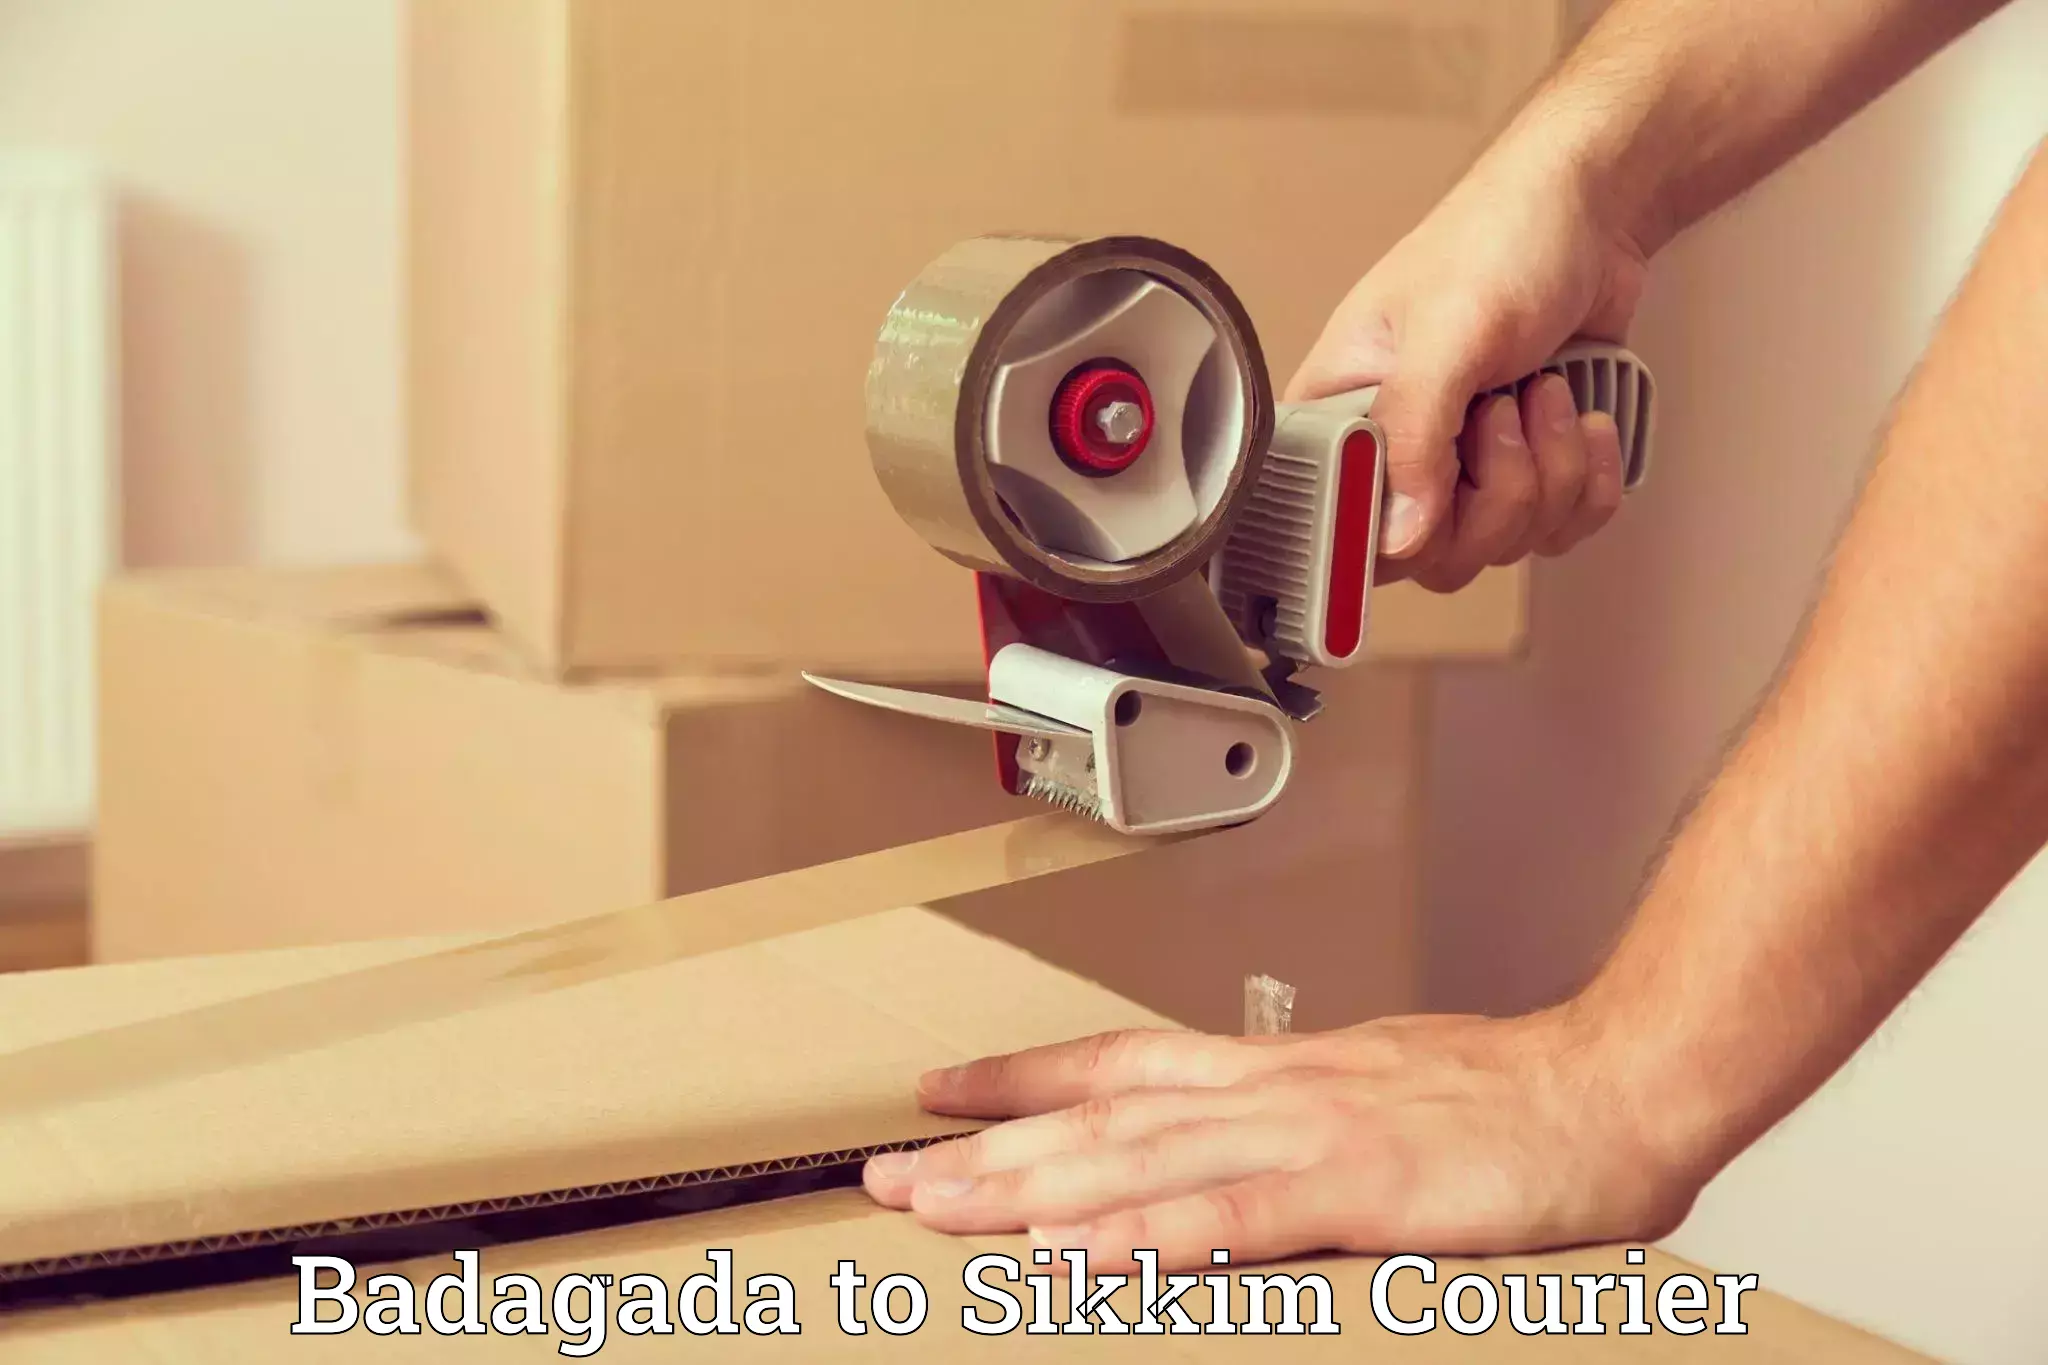 Home moving solutions Badagada to Singtam